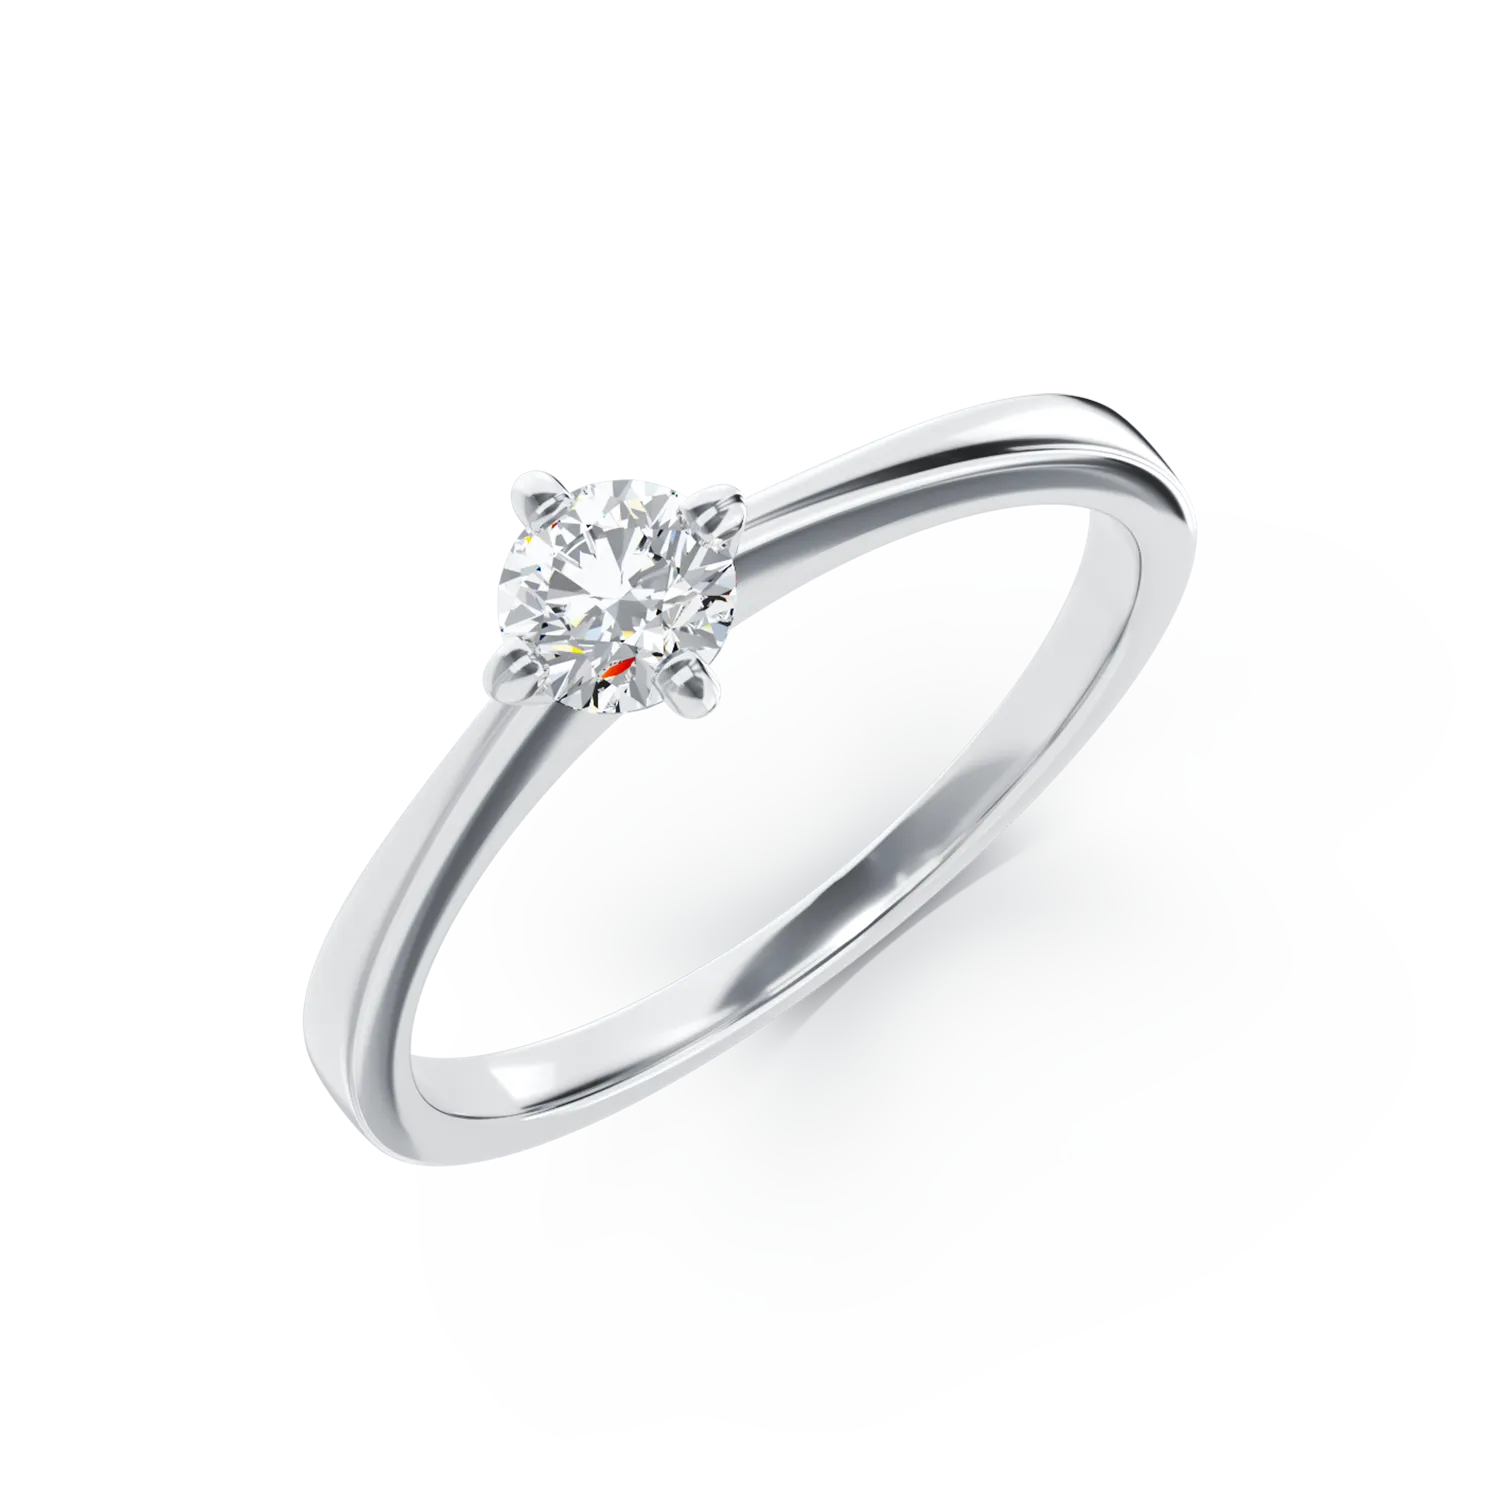 Eljegyzési gyűrű 18K-os fehér aranyból 0,3ct gyémánttal. Gramm: 2,45